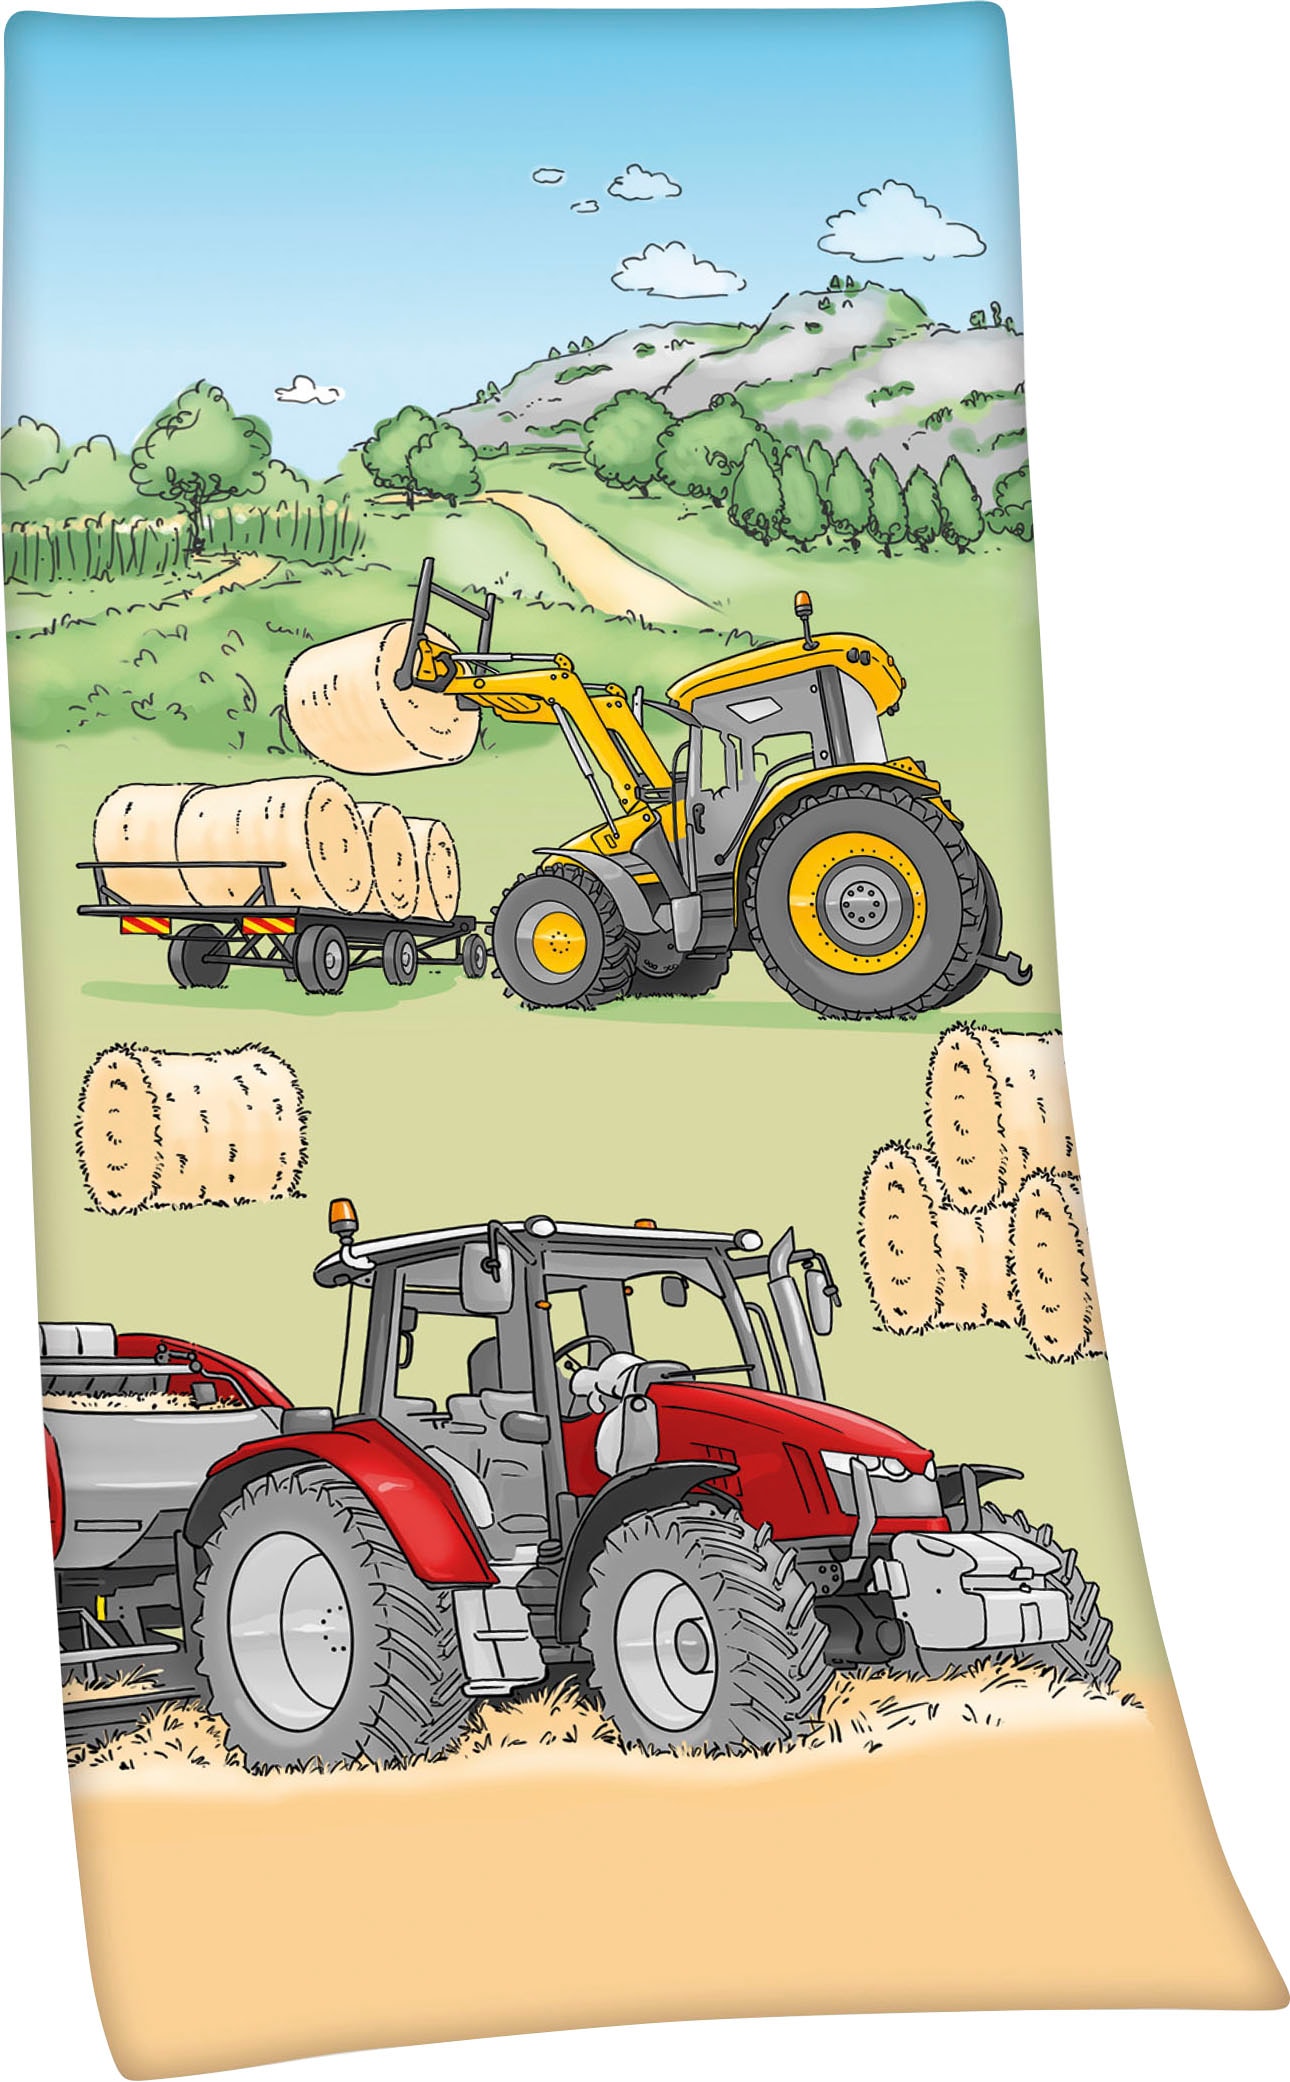 Traktor jetzt Young kaufen mit Motiv, tollem Herding Kuscheldecke Collection Kinderdecke »Traktor«,